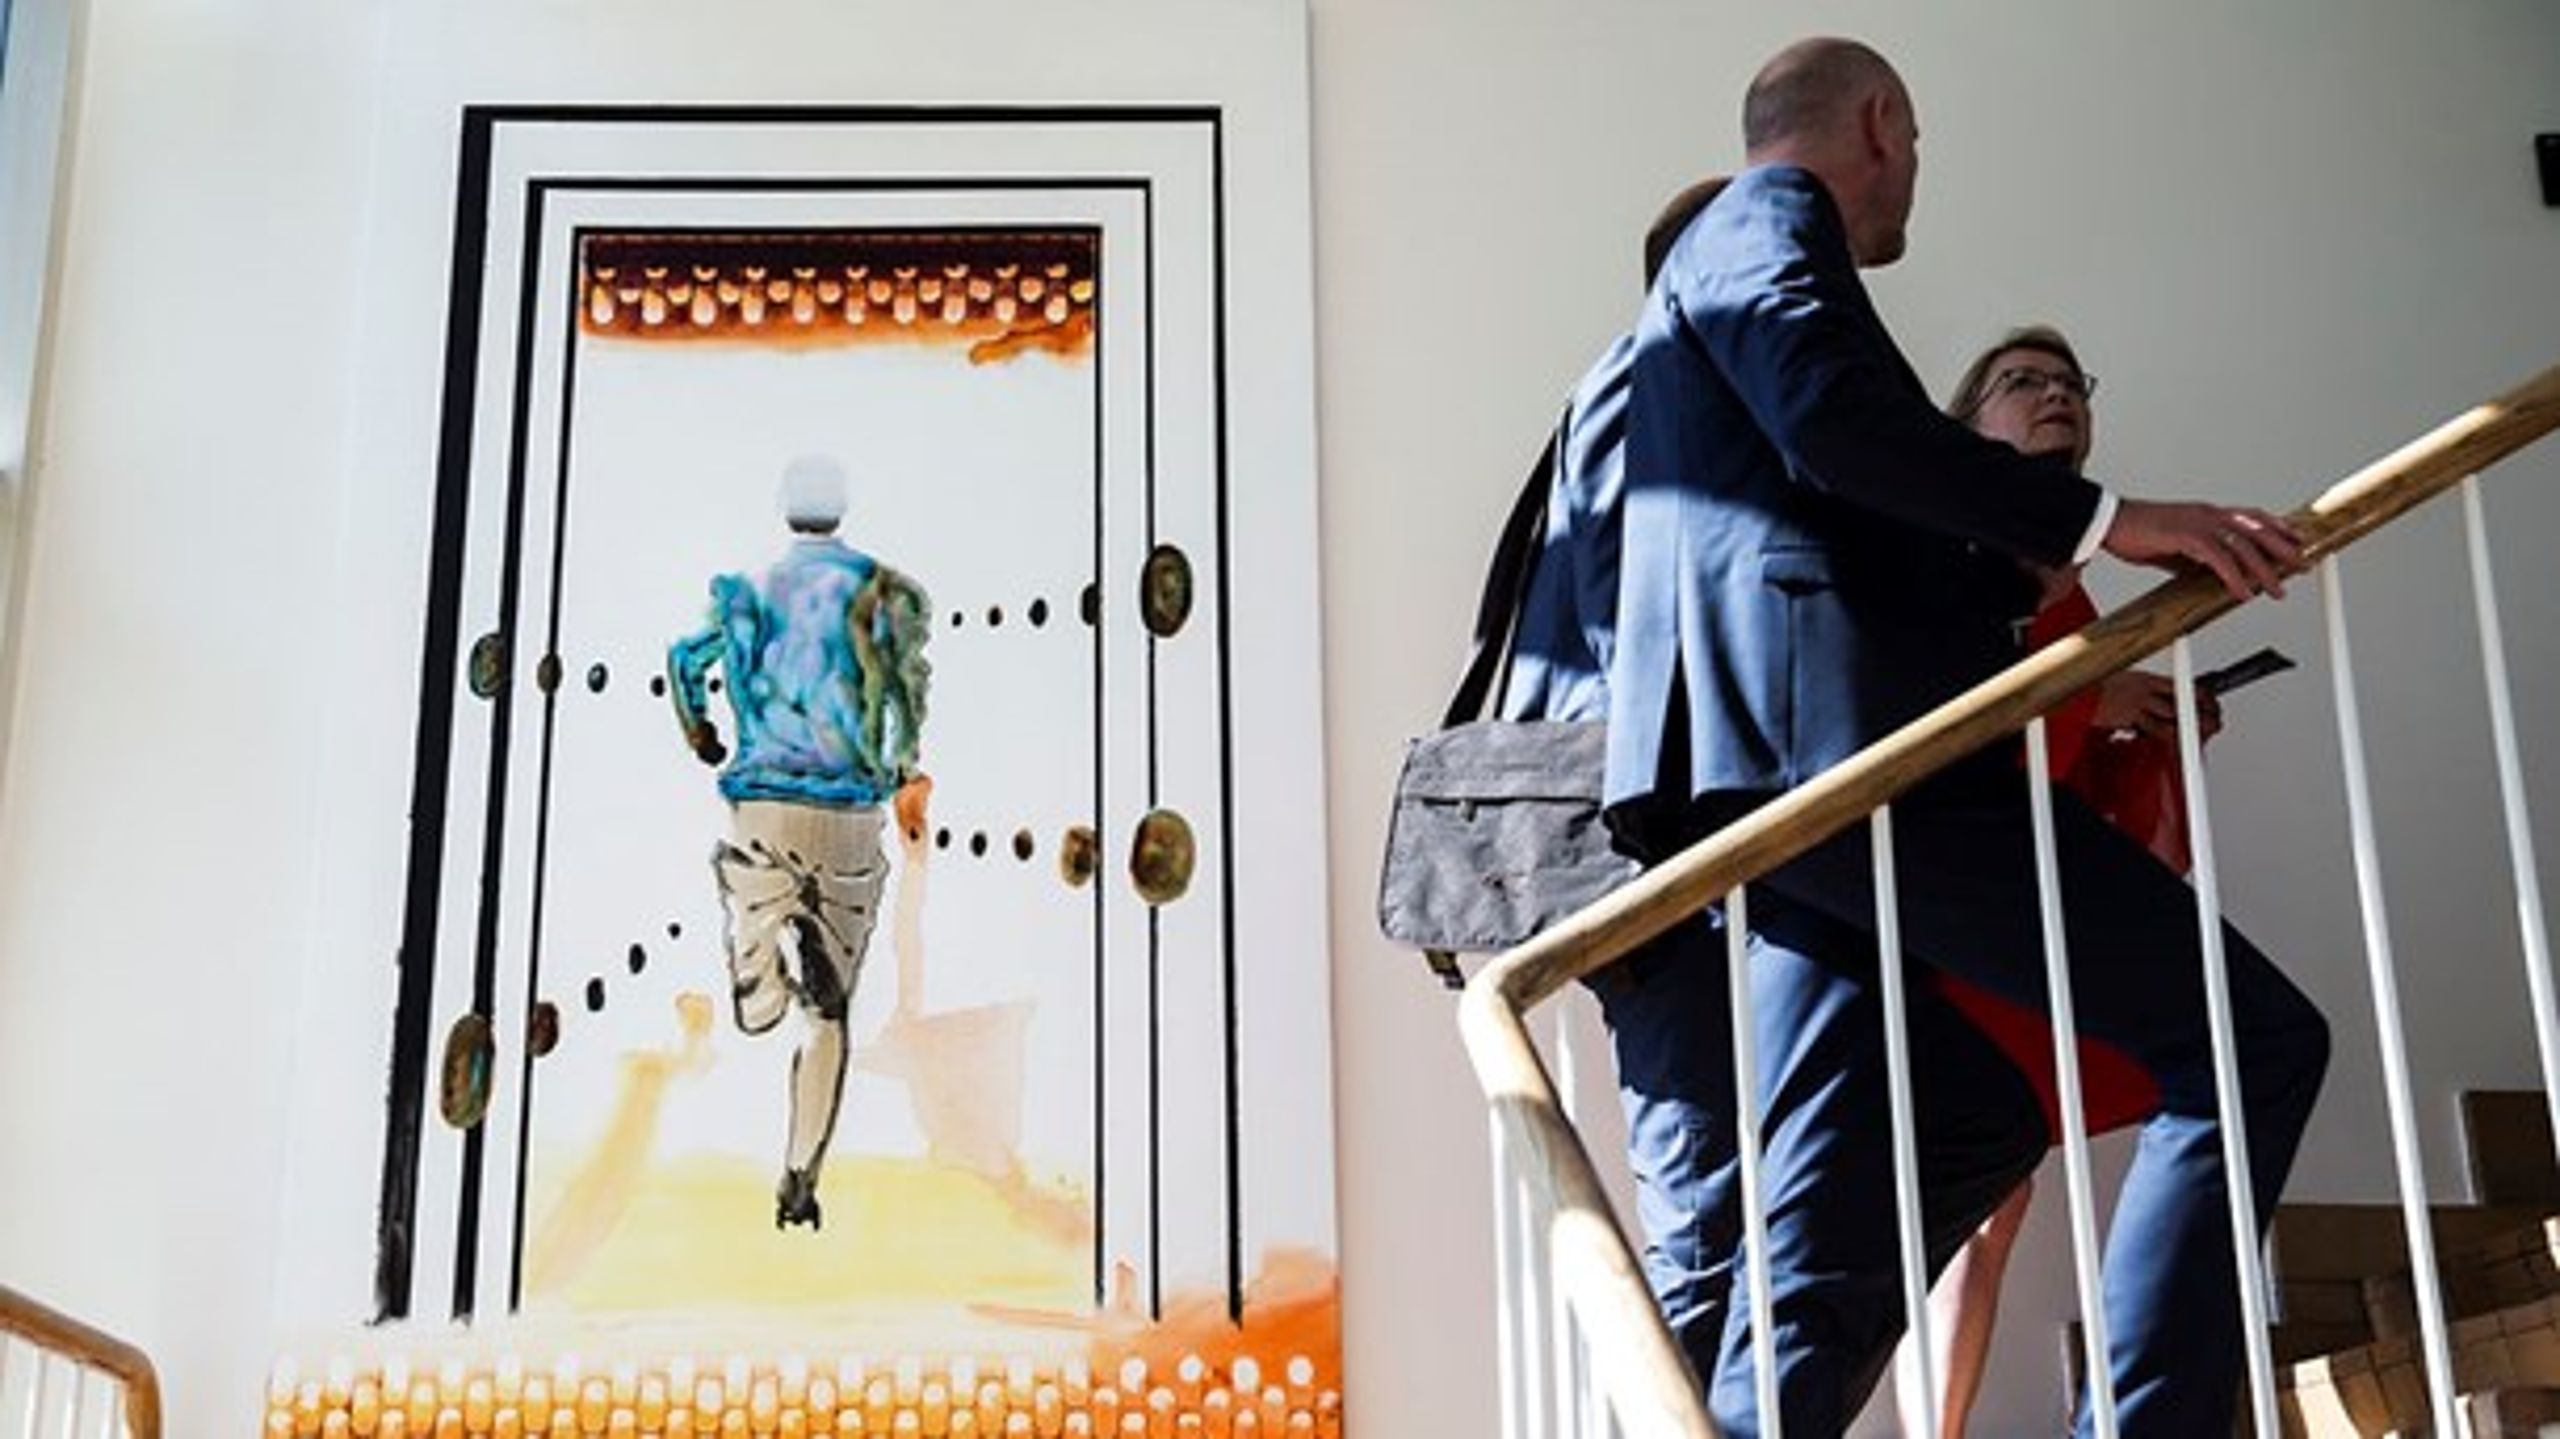 <b>OFFENTLIG LEDELSE</b>: 23. maj åbnede&nbsp;kronprins Frederik og kronprinsesse Mary Kronprins Frederiks Center for Offentlig Ledelse i Aarhus, hvor dette maleri af John Kørner hænger.